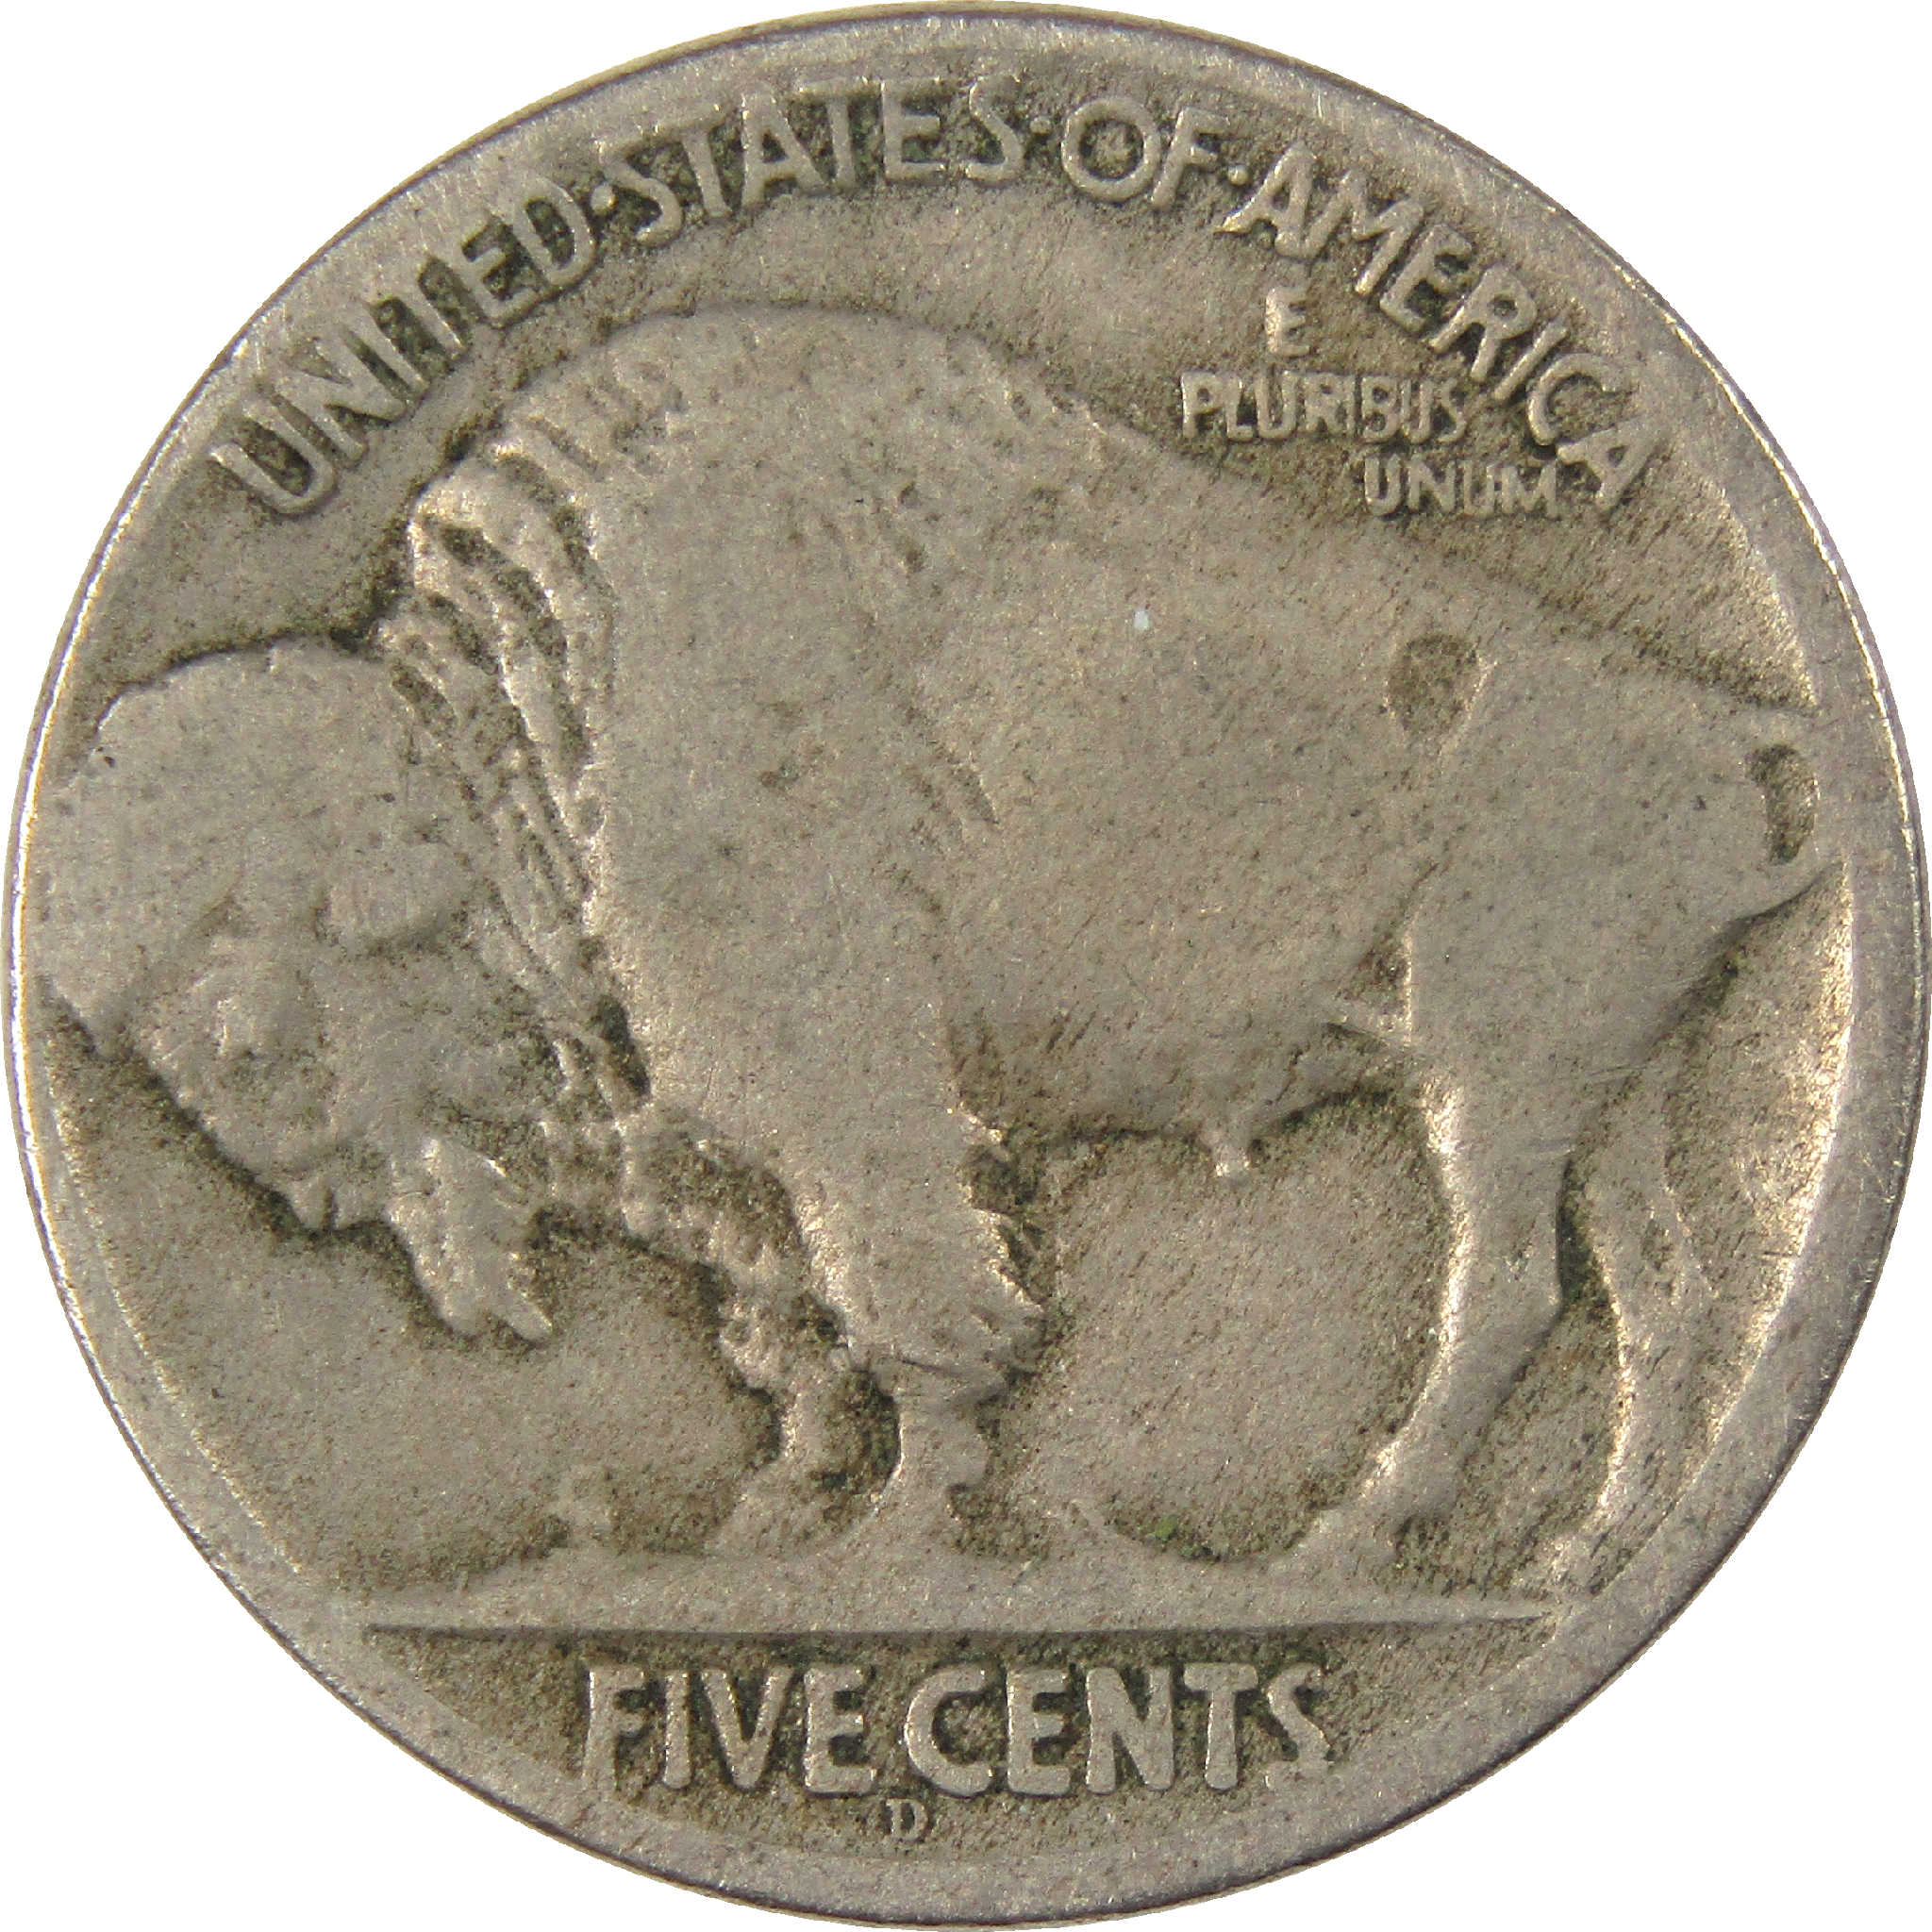 1918 D Indian Head Buffalo Nickel VG Very Good 5c Coin SKU:I11511